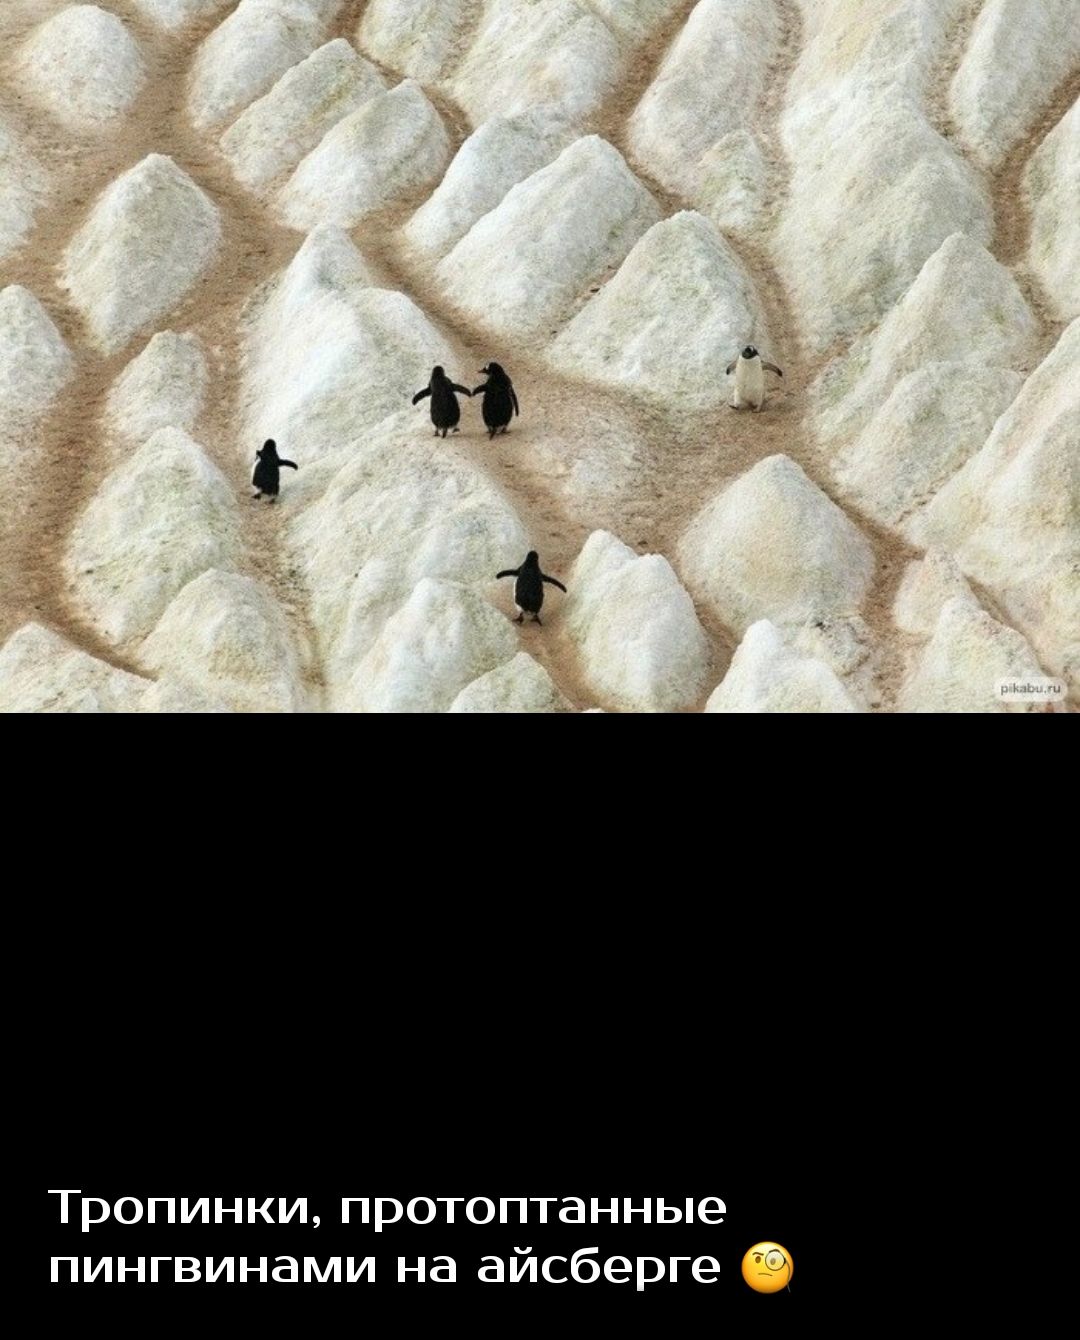 Тропинки протоптанные пингвинами на айсберге